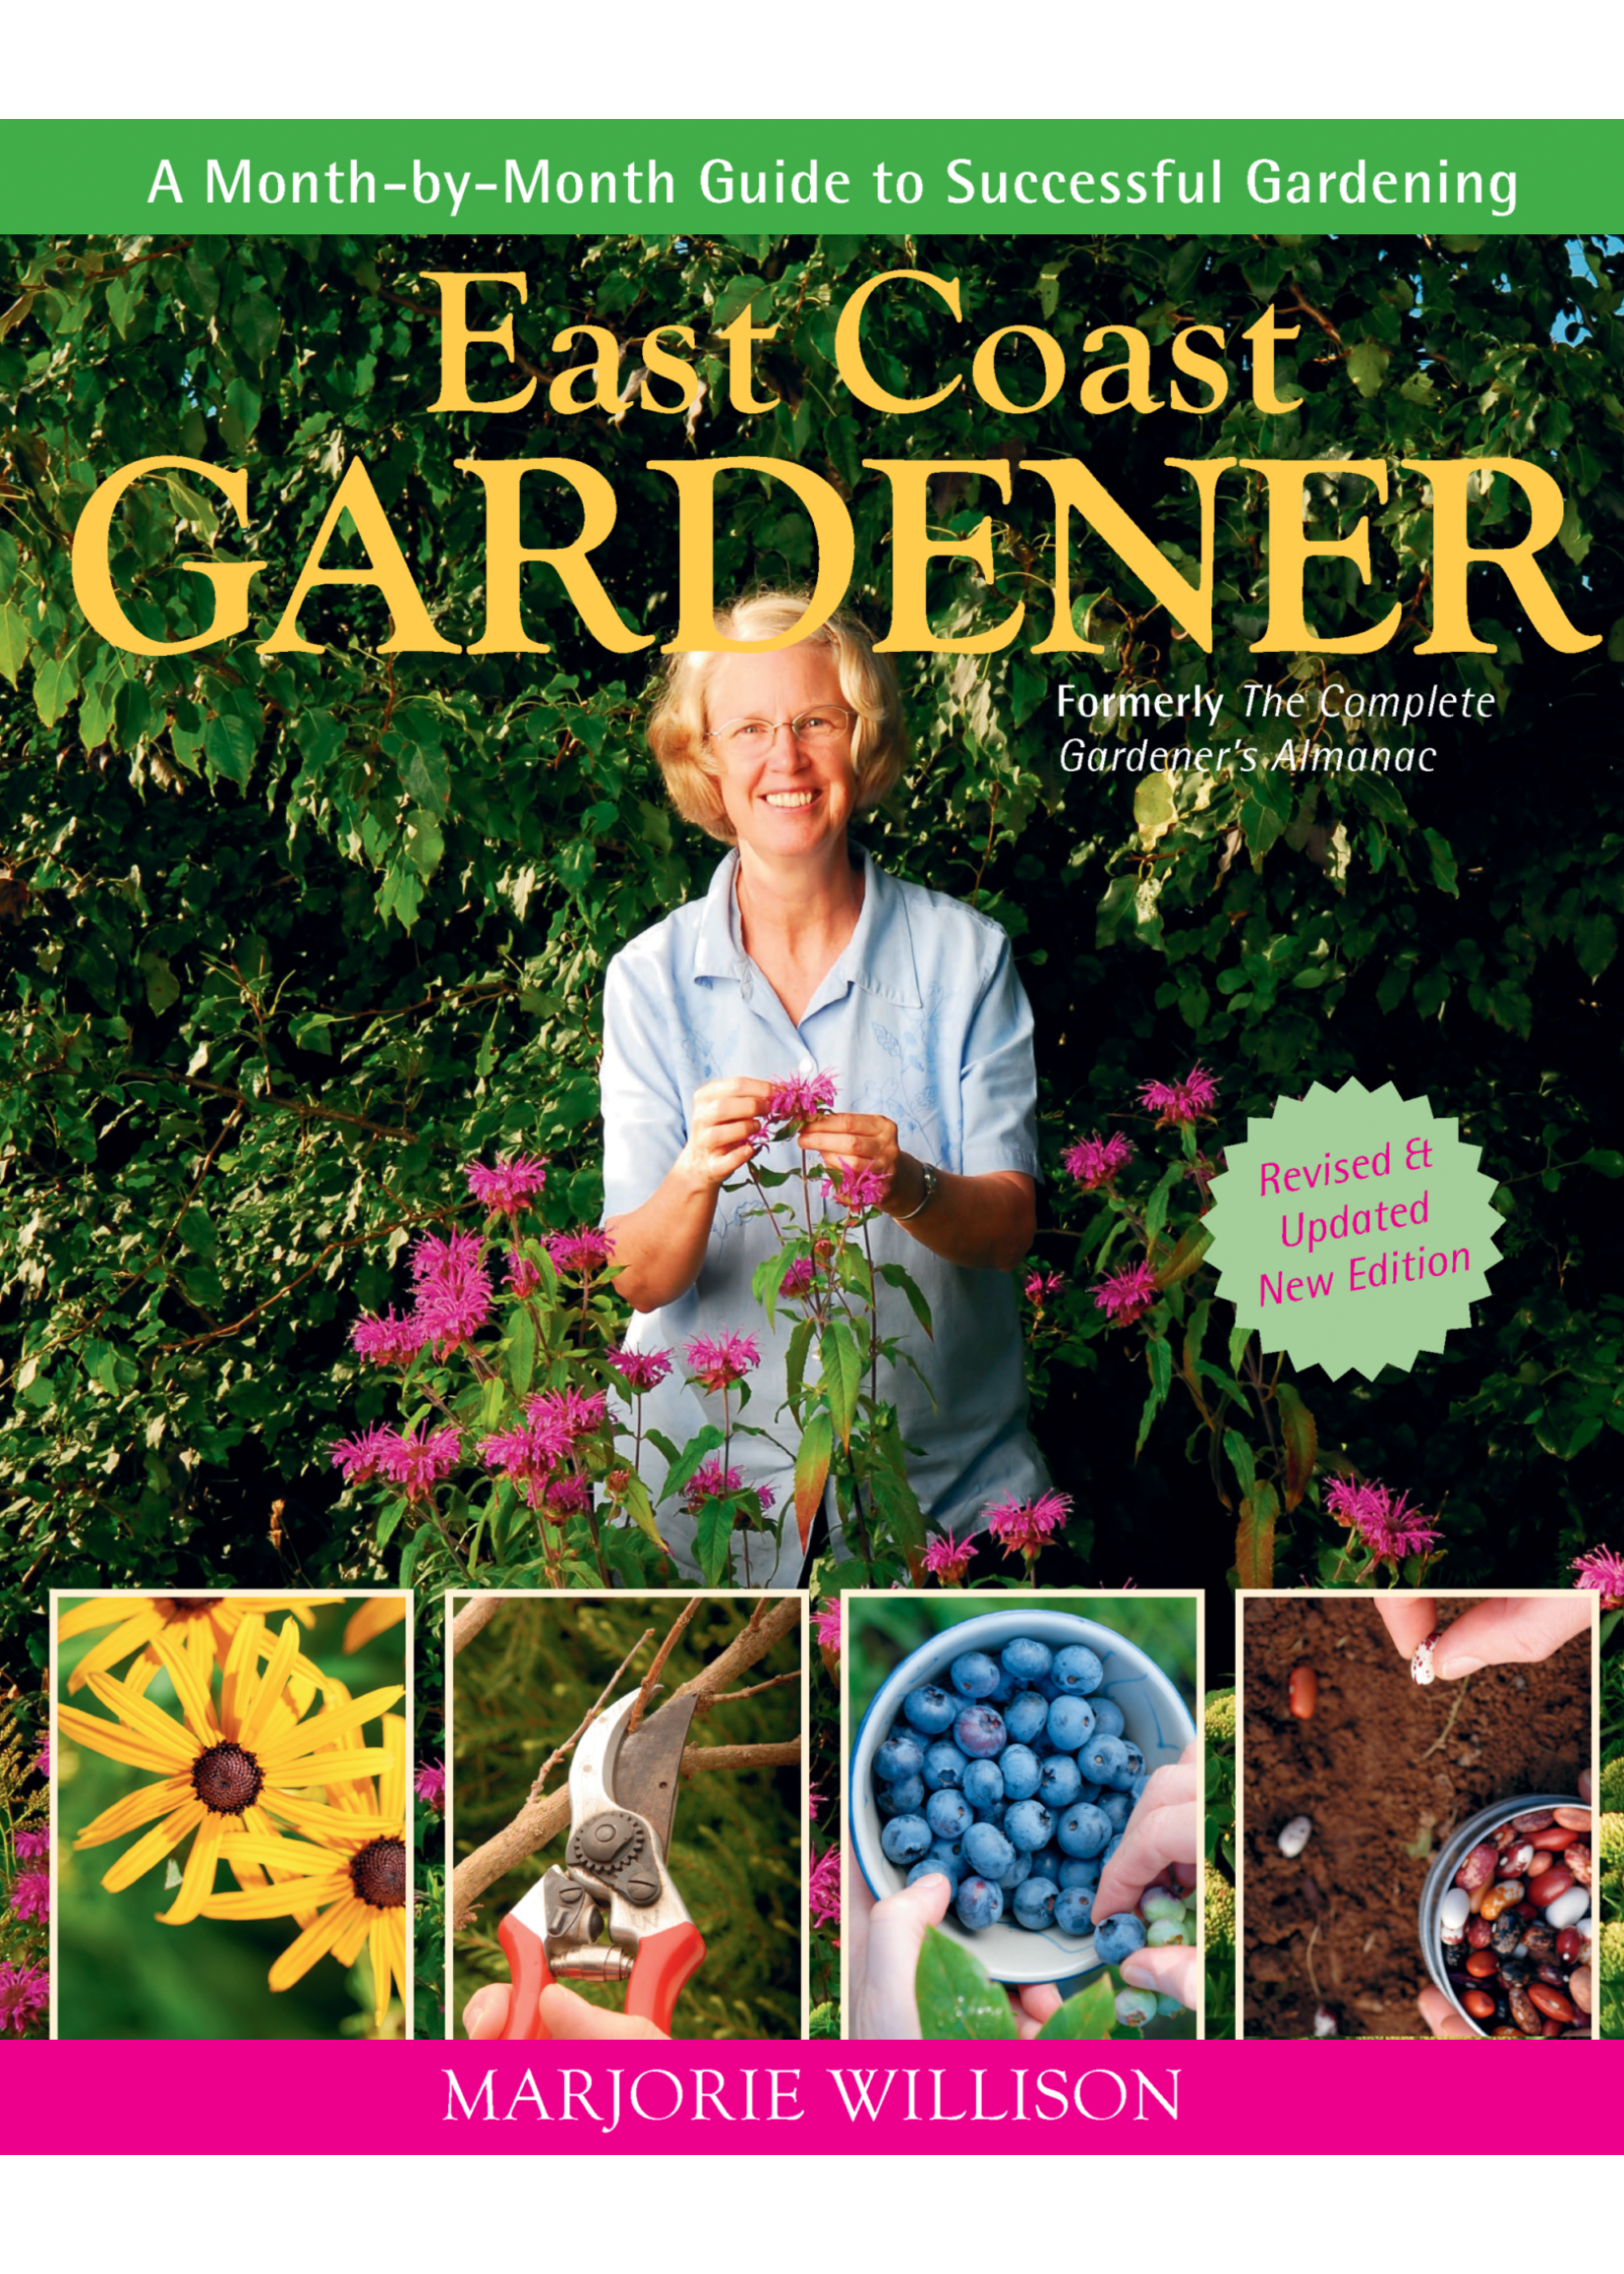 East Coast Gardener by Marjorie Willison